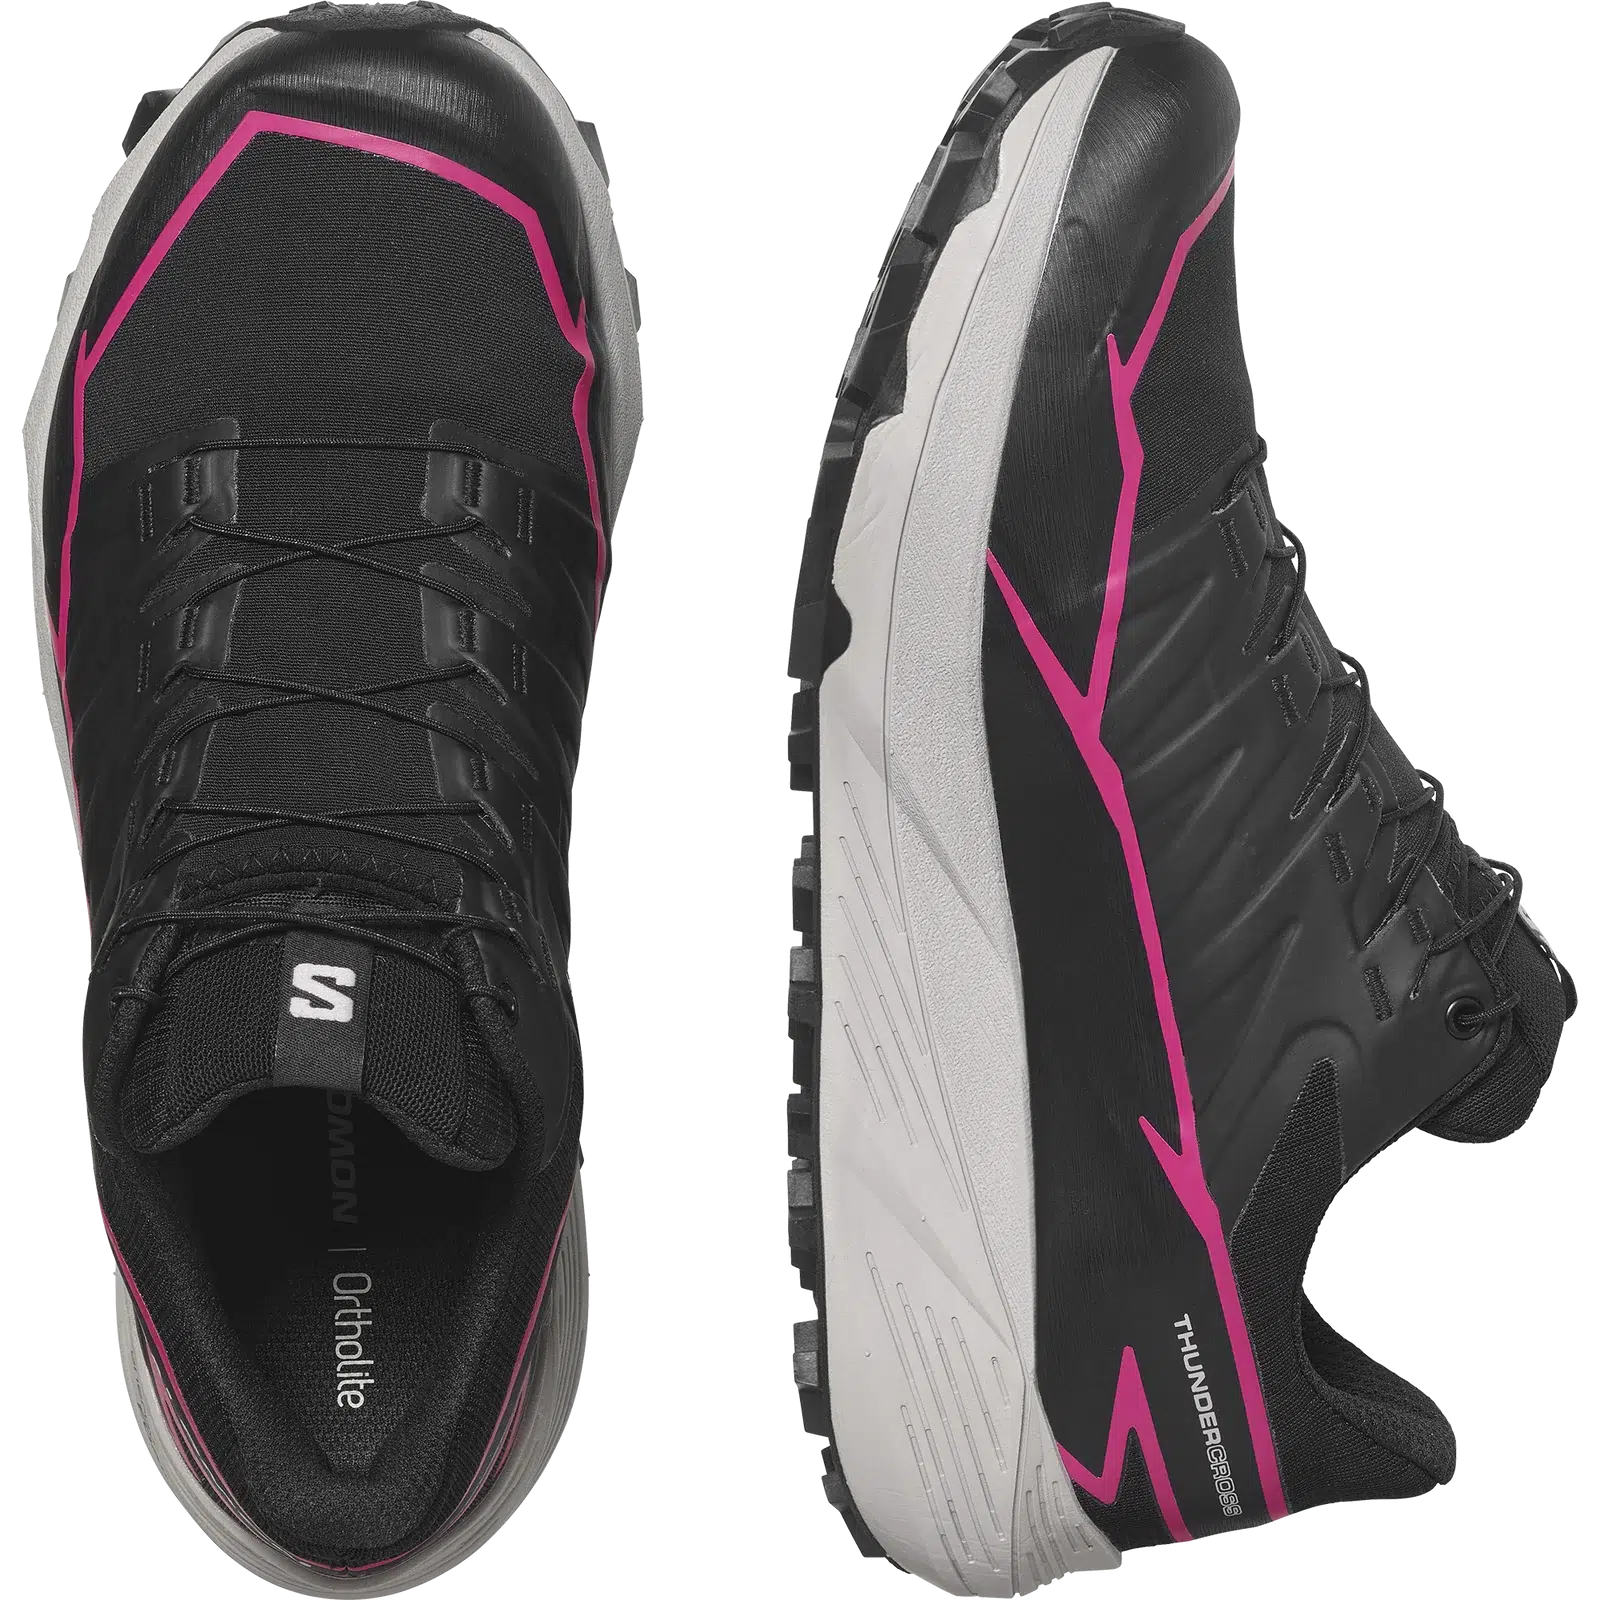 Salomon Women's Thundercross GTX Trail Running Shoes